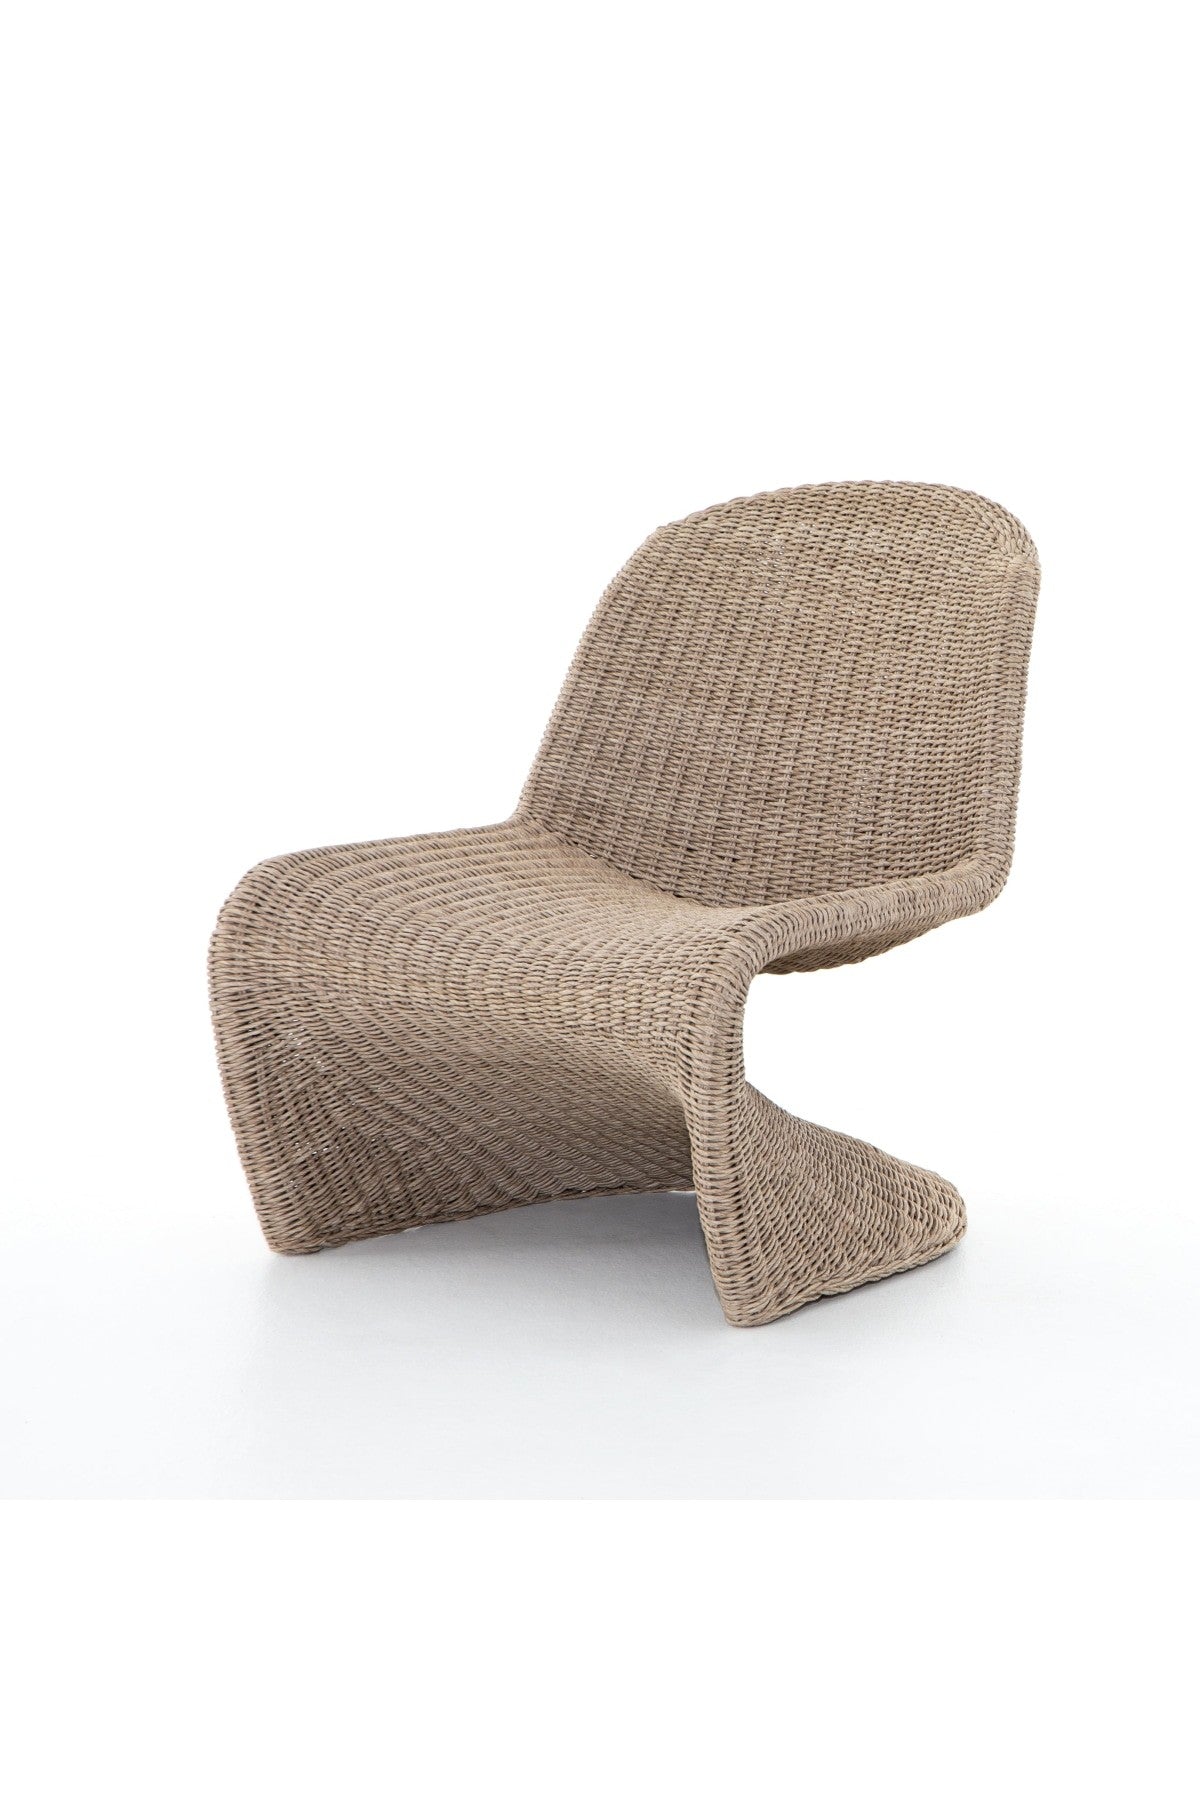 Klein Outdoor Accent Chair - Vintage White